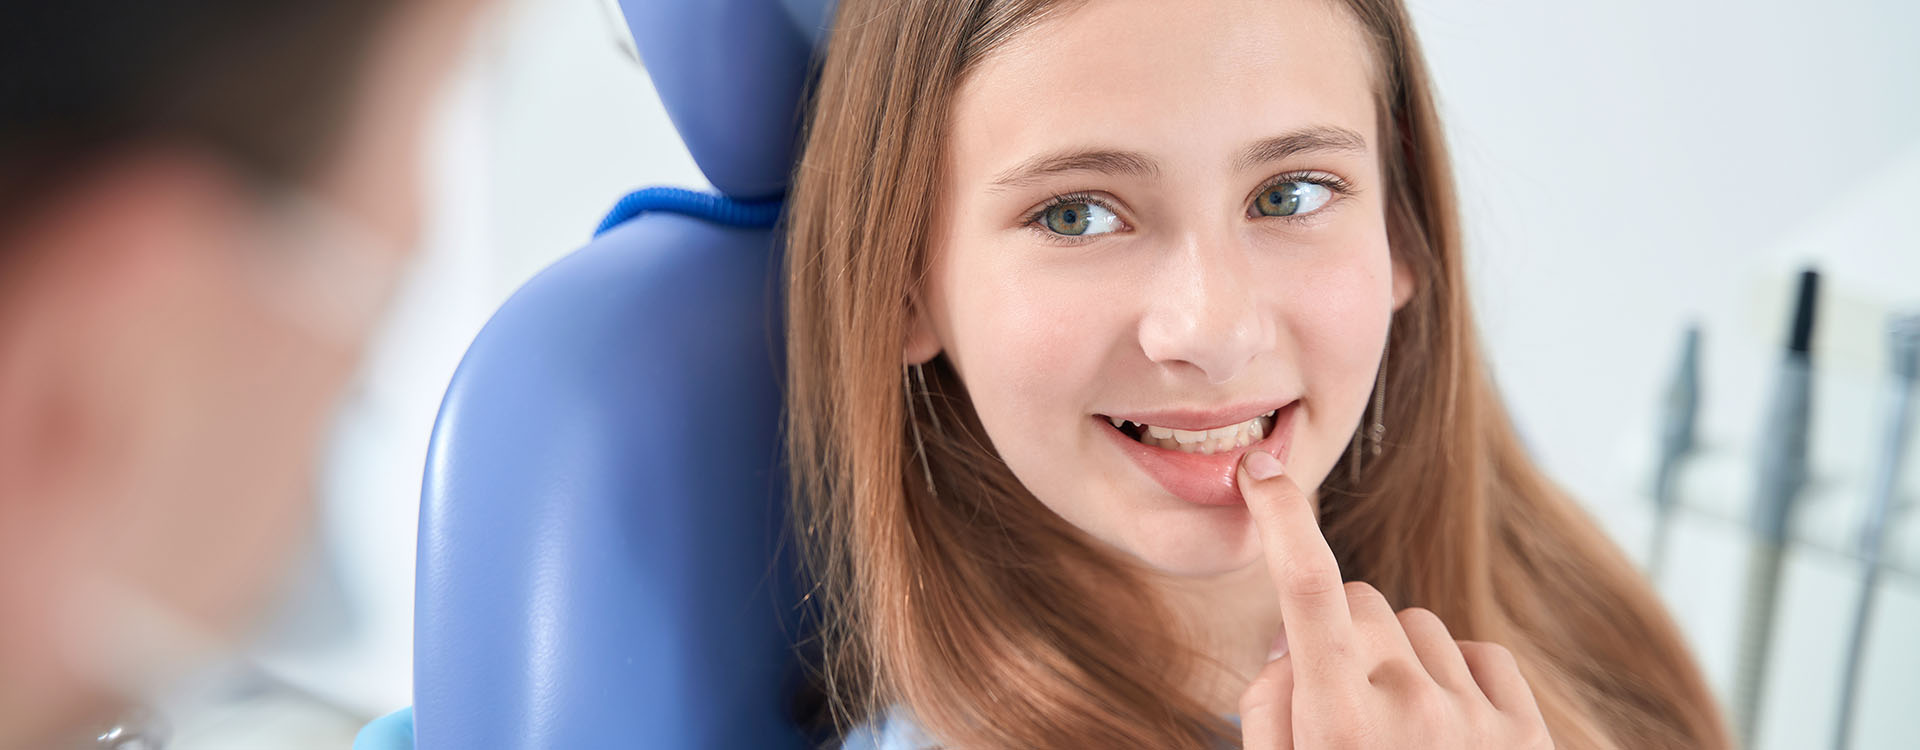 Clínica Dental Andrea Compte, tu Centro Odontológico especializado. Odontopediatría en Santa Magdalena. Paciente adolescente en la consulta del dentista pediátrico.